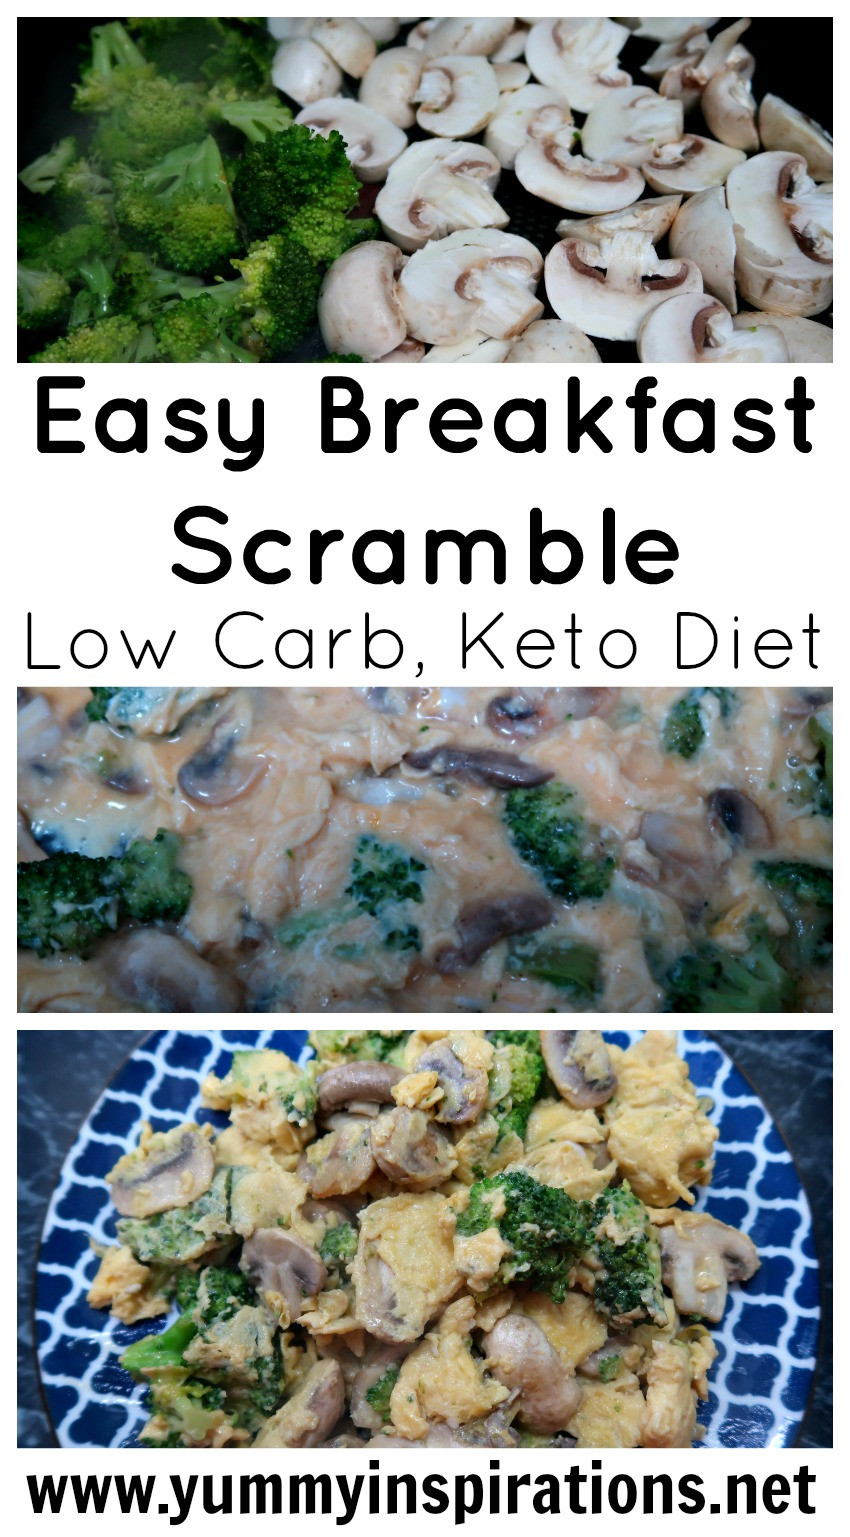 Low Carb Keto Breakfast Easy
 Easy Keto Breakfast Scramble Recipe & Video Simple Low